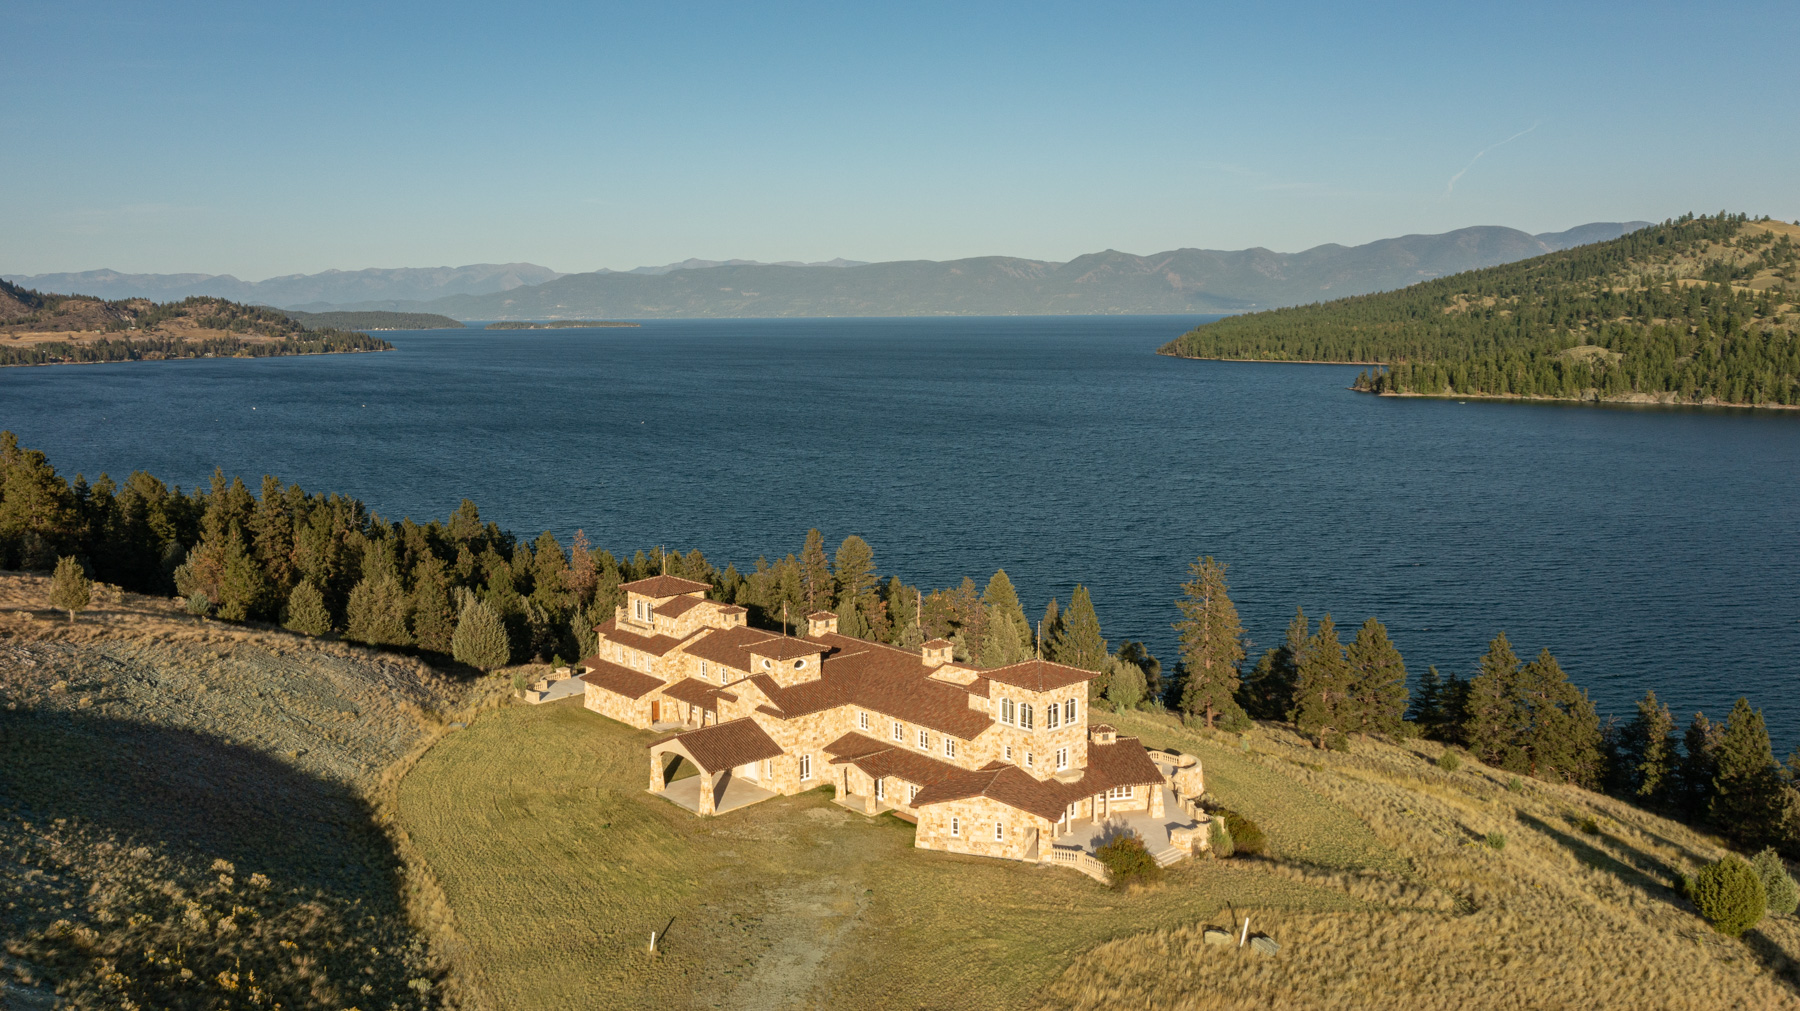 imagen 7 de A la venta una isla con casa mansión y embarcadero incluido en el lago Flathead.